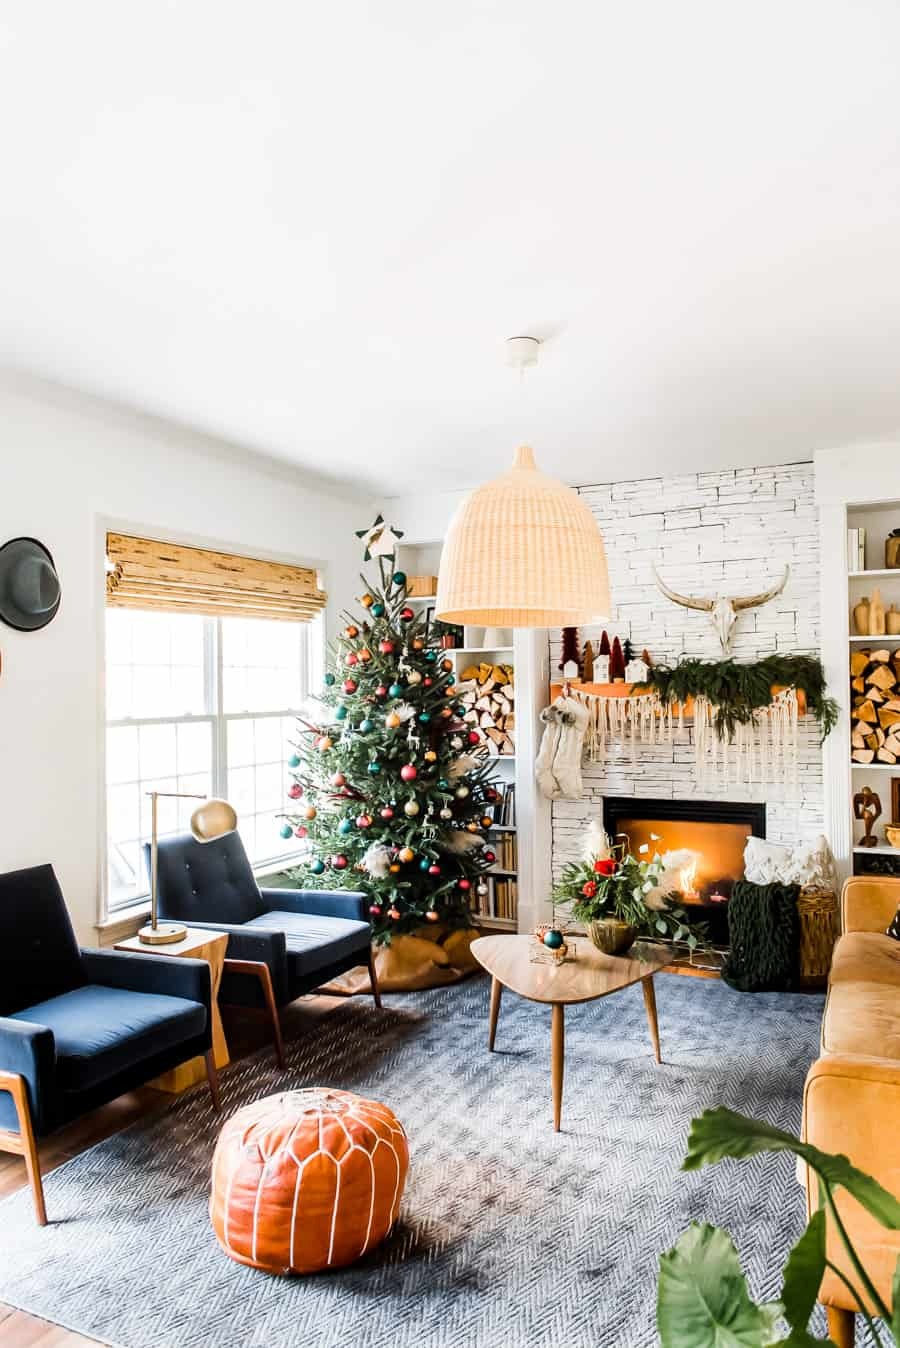 Una sala de estar con paredes en tonos blanco y beige refleja la paleta de colores de la decoración estilo boho. Incluye decoraciones navideñas en dorado y cobre junto a muebles en tonos terracota, anaranjados y azules.